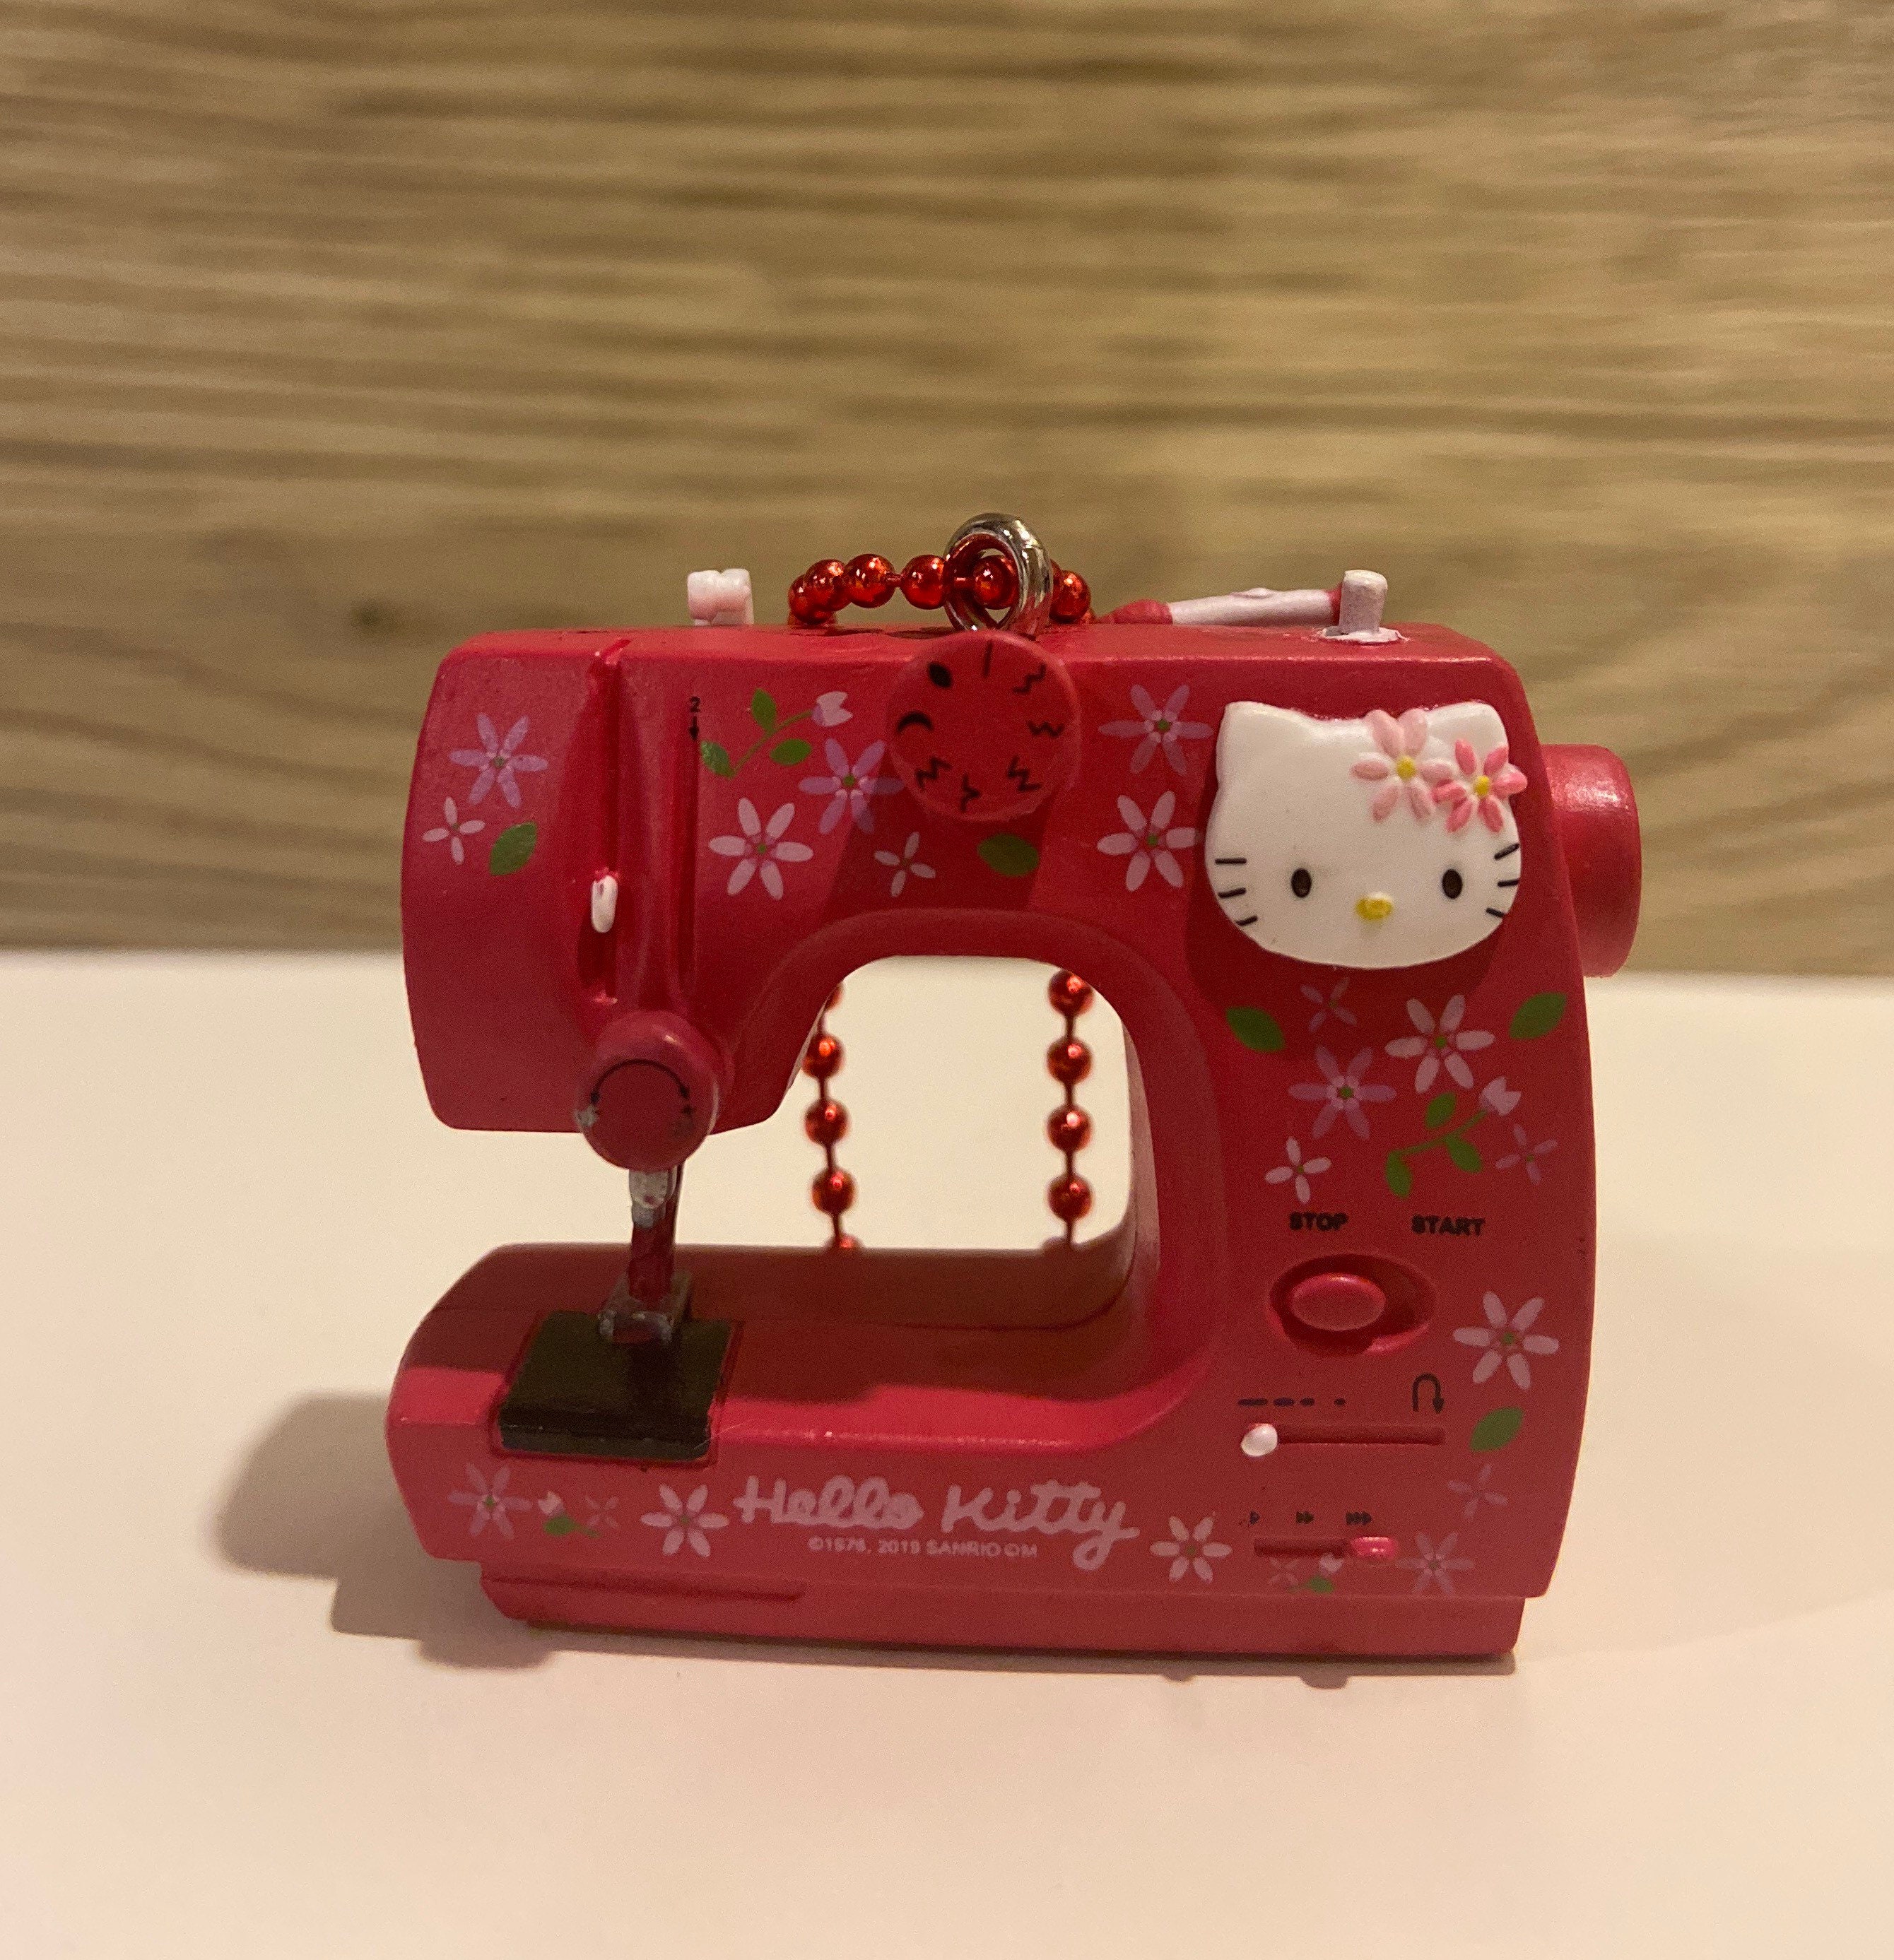 Retired Miniature Hello Kitty Sewing Machine Clock Camera Phone